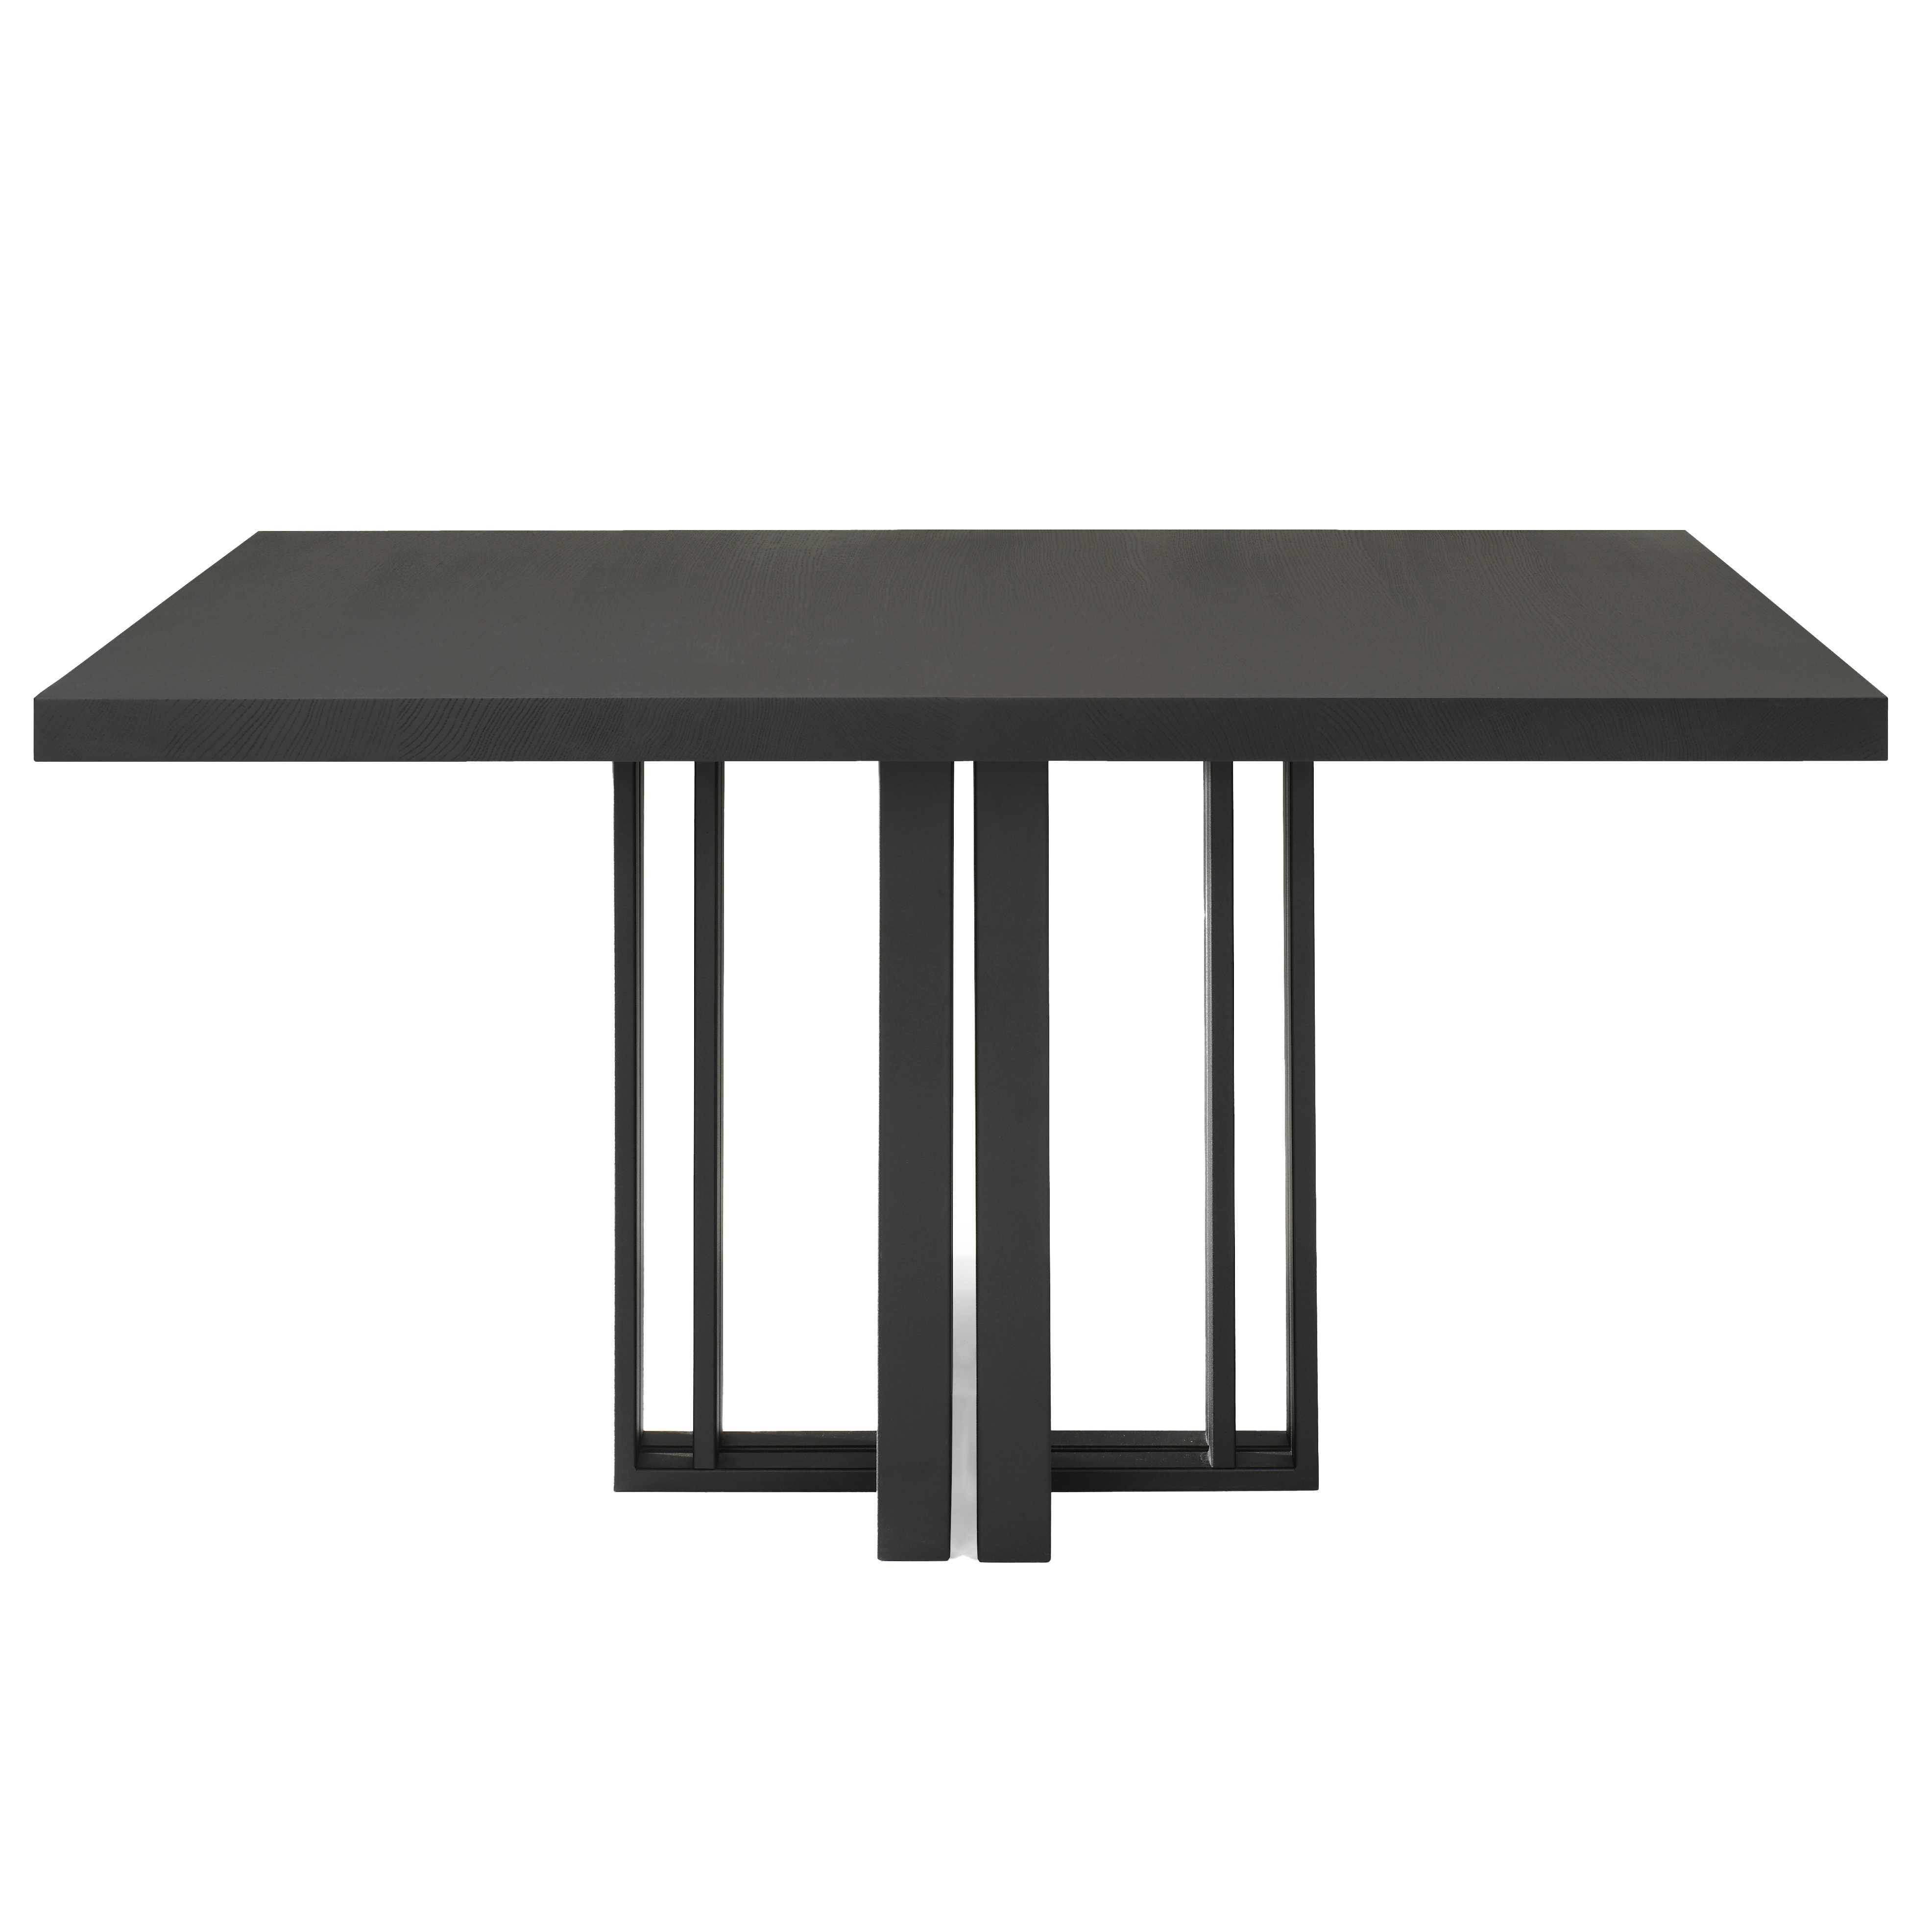 QLiv T2 tafel 160x160 Coal Black Eiken | Flinders